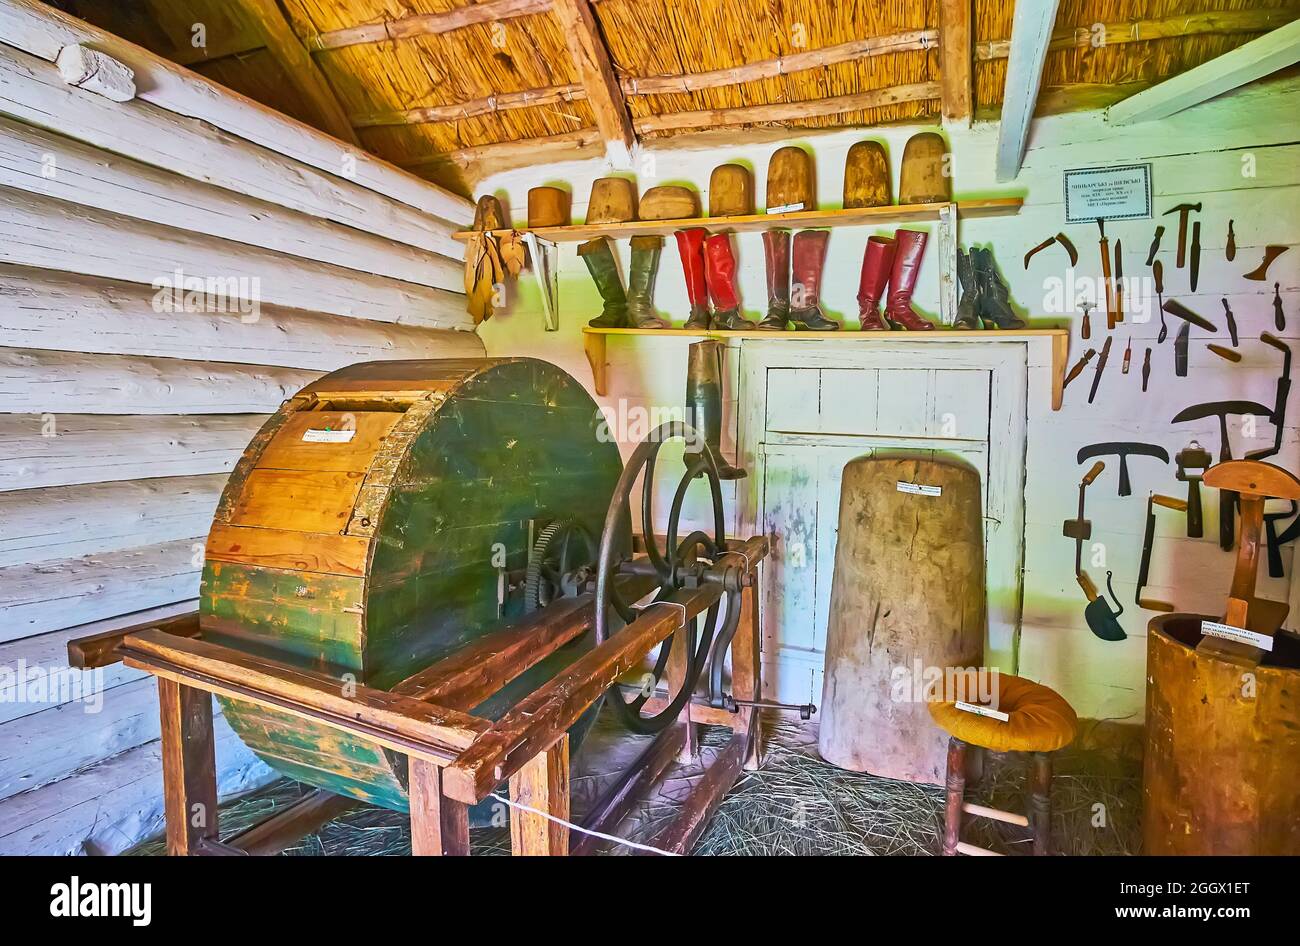 PEREIASLAV, UKRAINE - 22 MAI 2021: L'atelier de tannerie médiéval avec tambour de tannage en cuir, les outils de tanner et des exemples de bottes artisanales vintage Banque D'Images